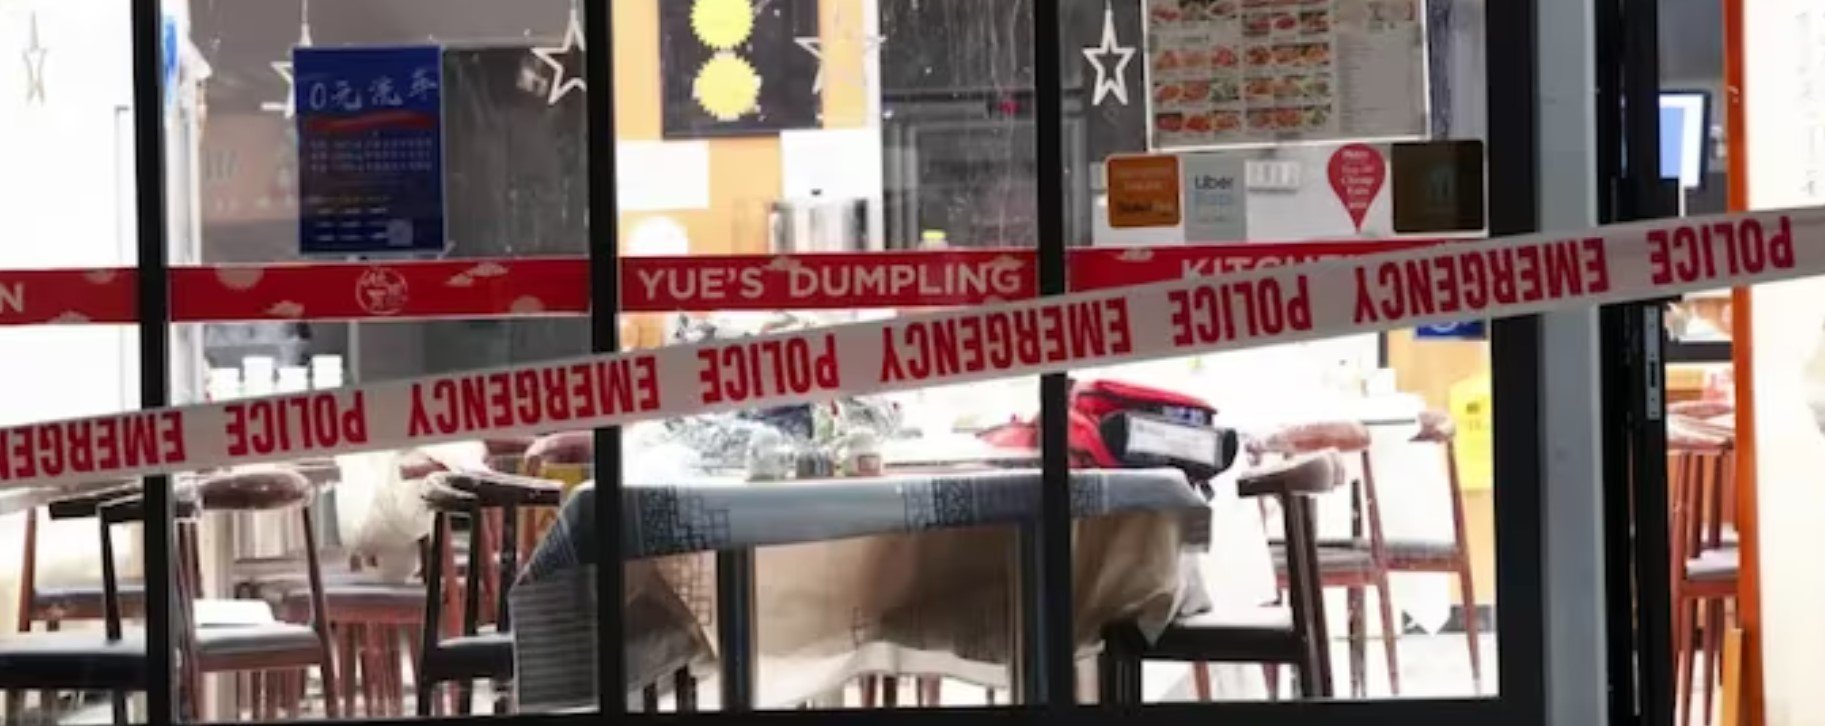  Un bărbat cu un topor atacă restaurantele chinezeşti: patru persoane au fost rănite